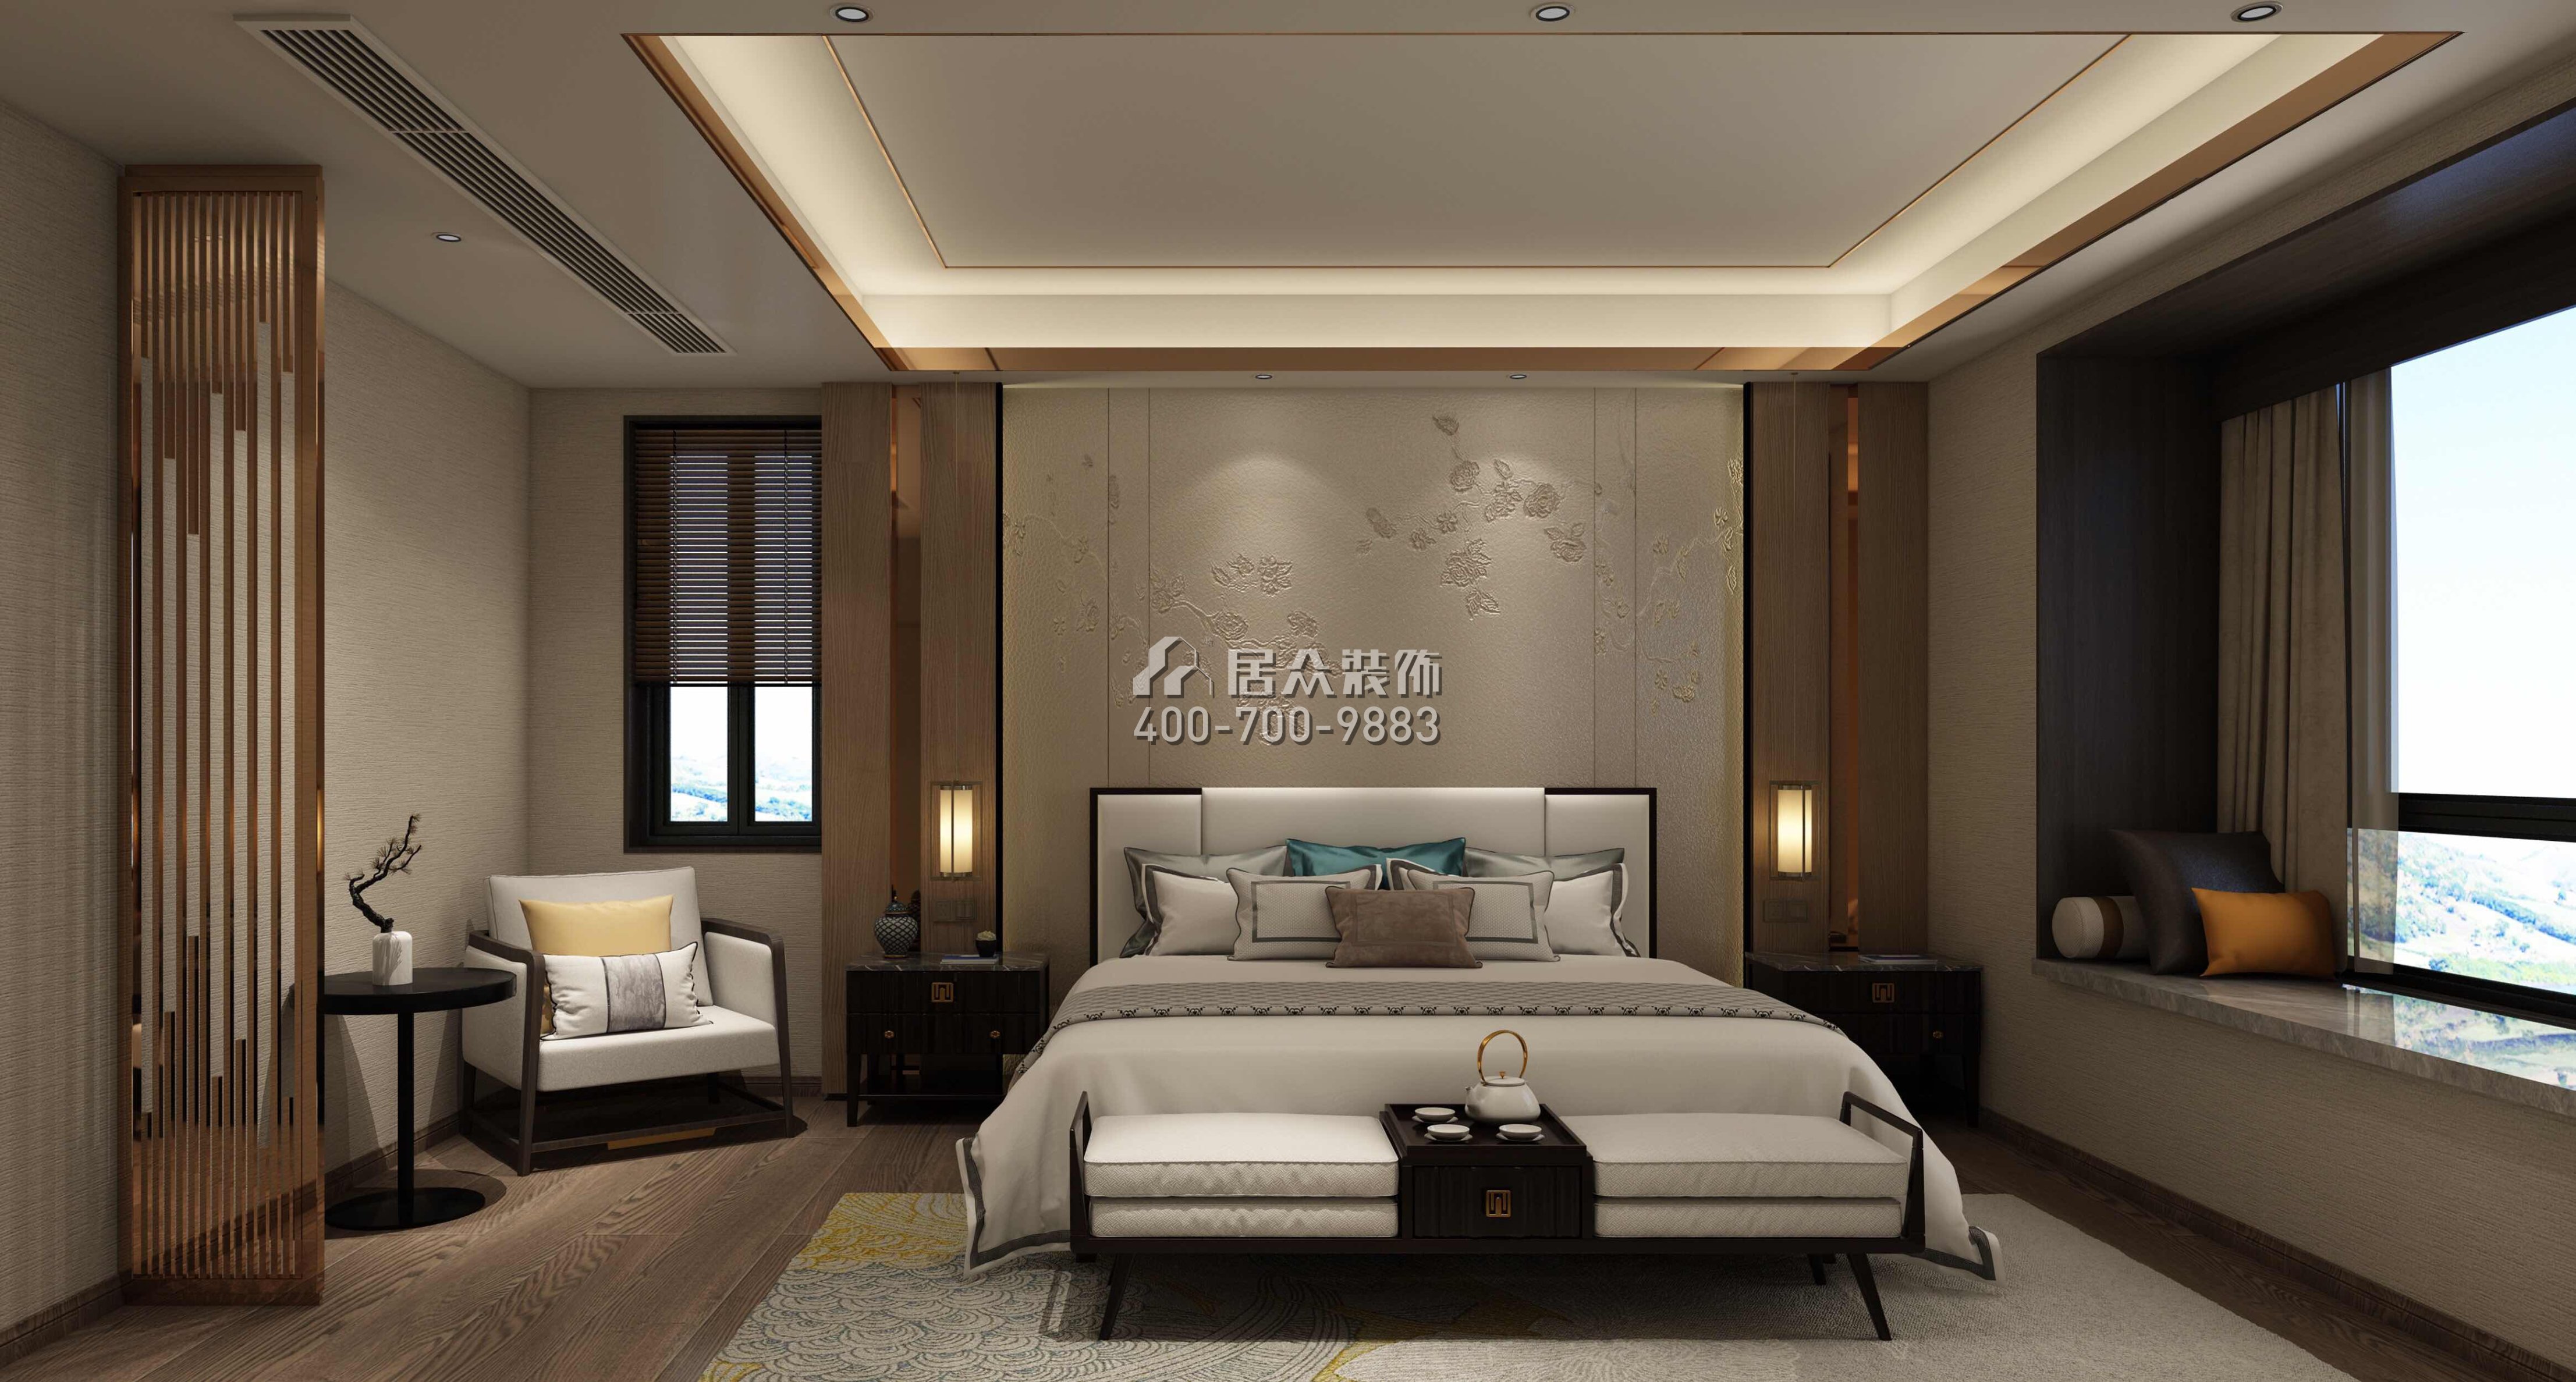 華潤城潤府二期189平方米現代簡約風格平層戶型裝修效果圖